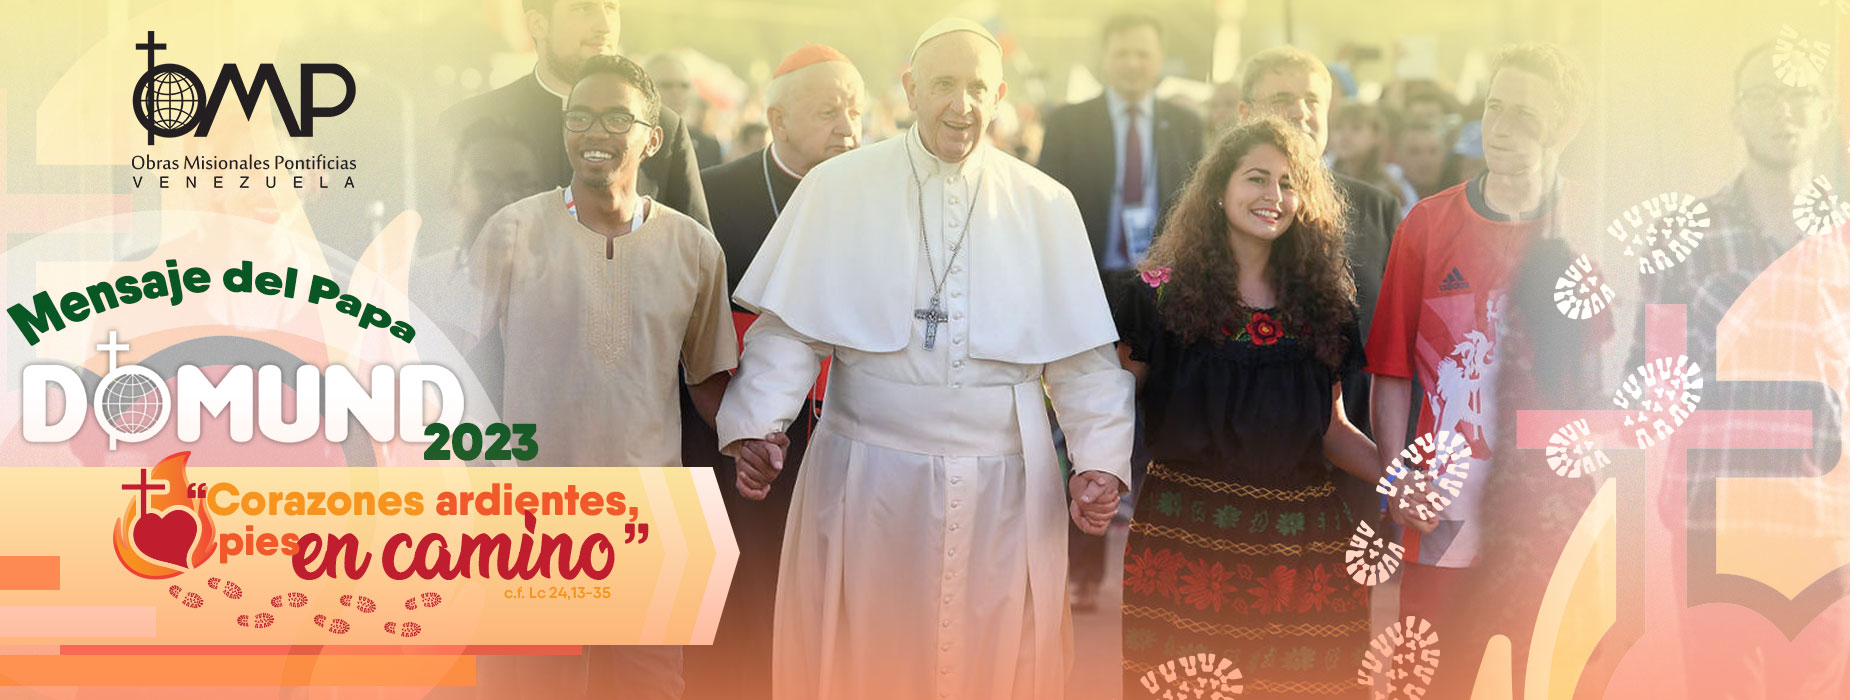 Mensaje del Papa DOMUND 2023